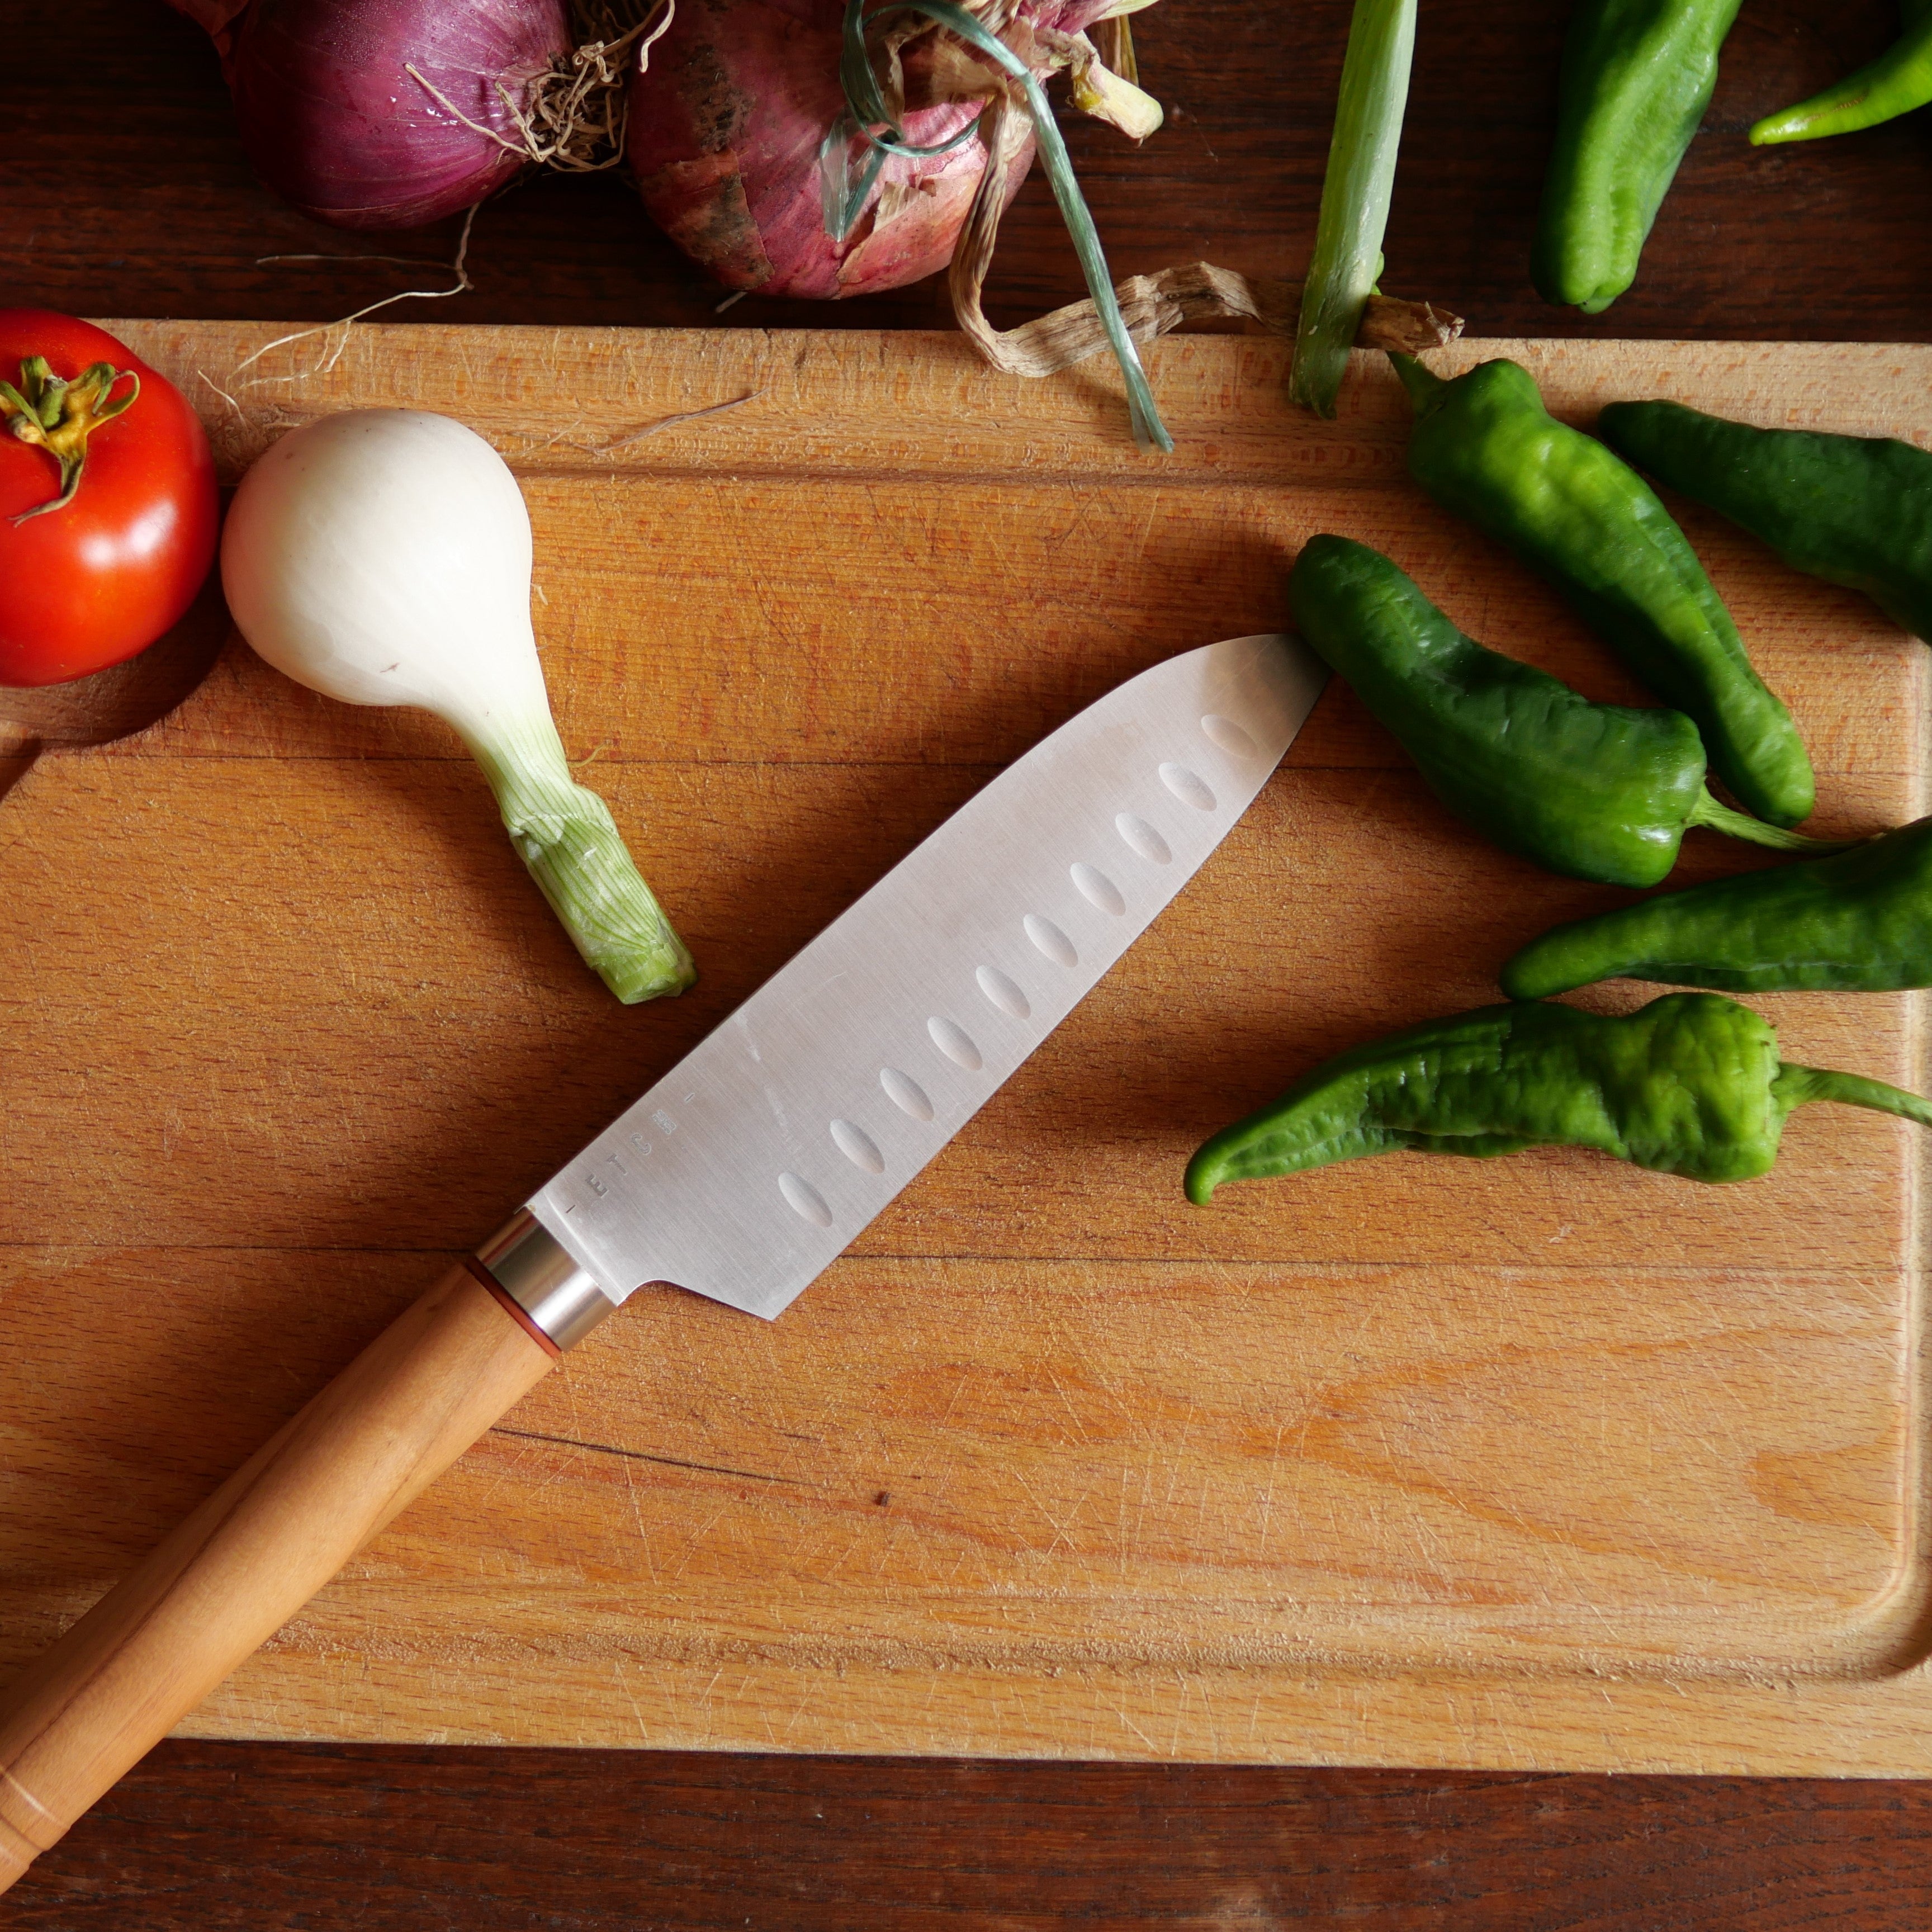 Couteau Santoku : couteau de cuisine professionnel japonais